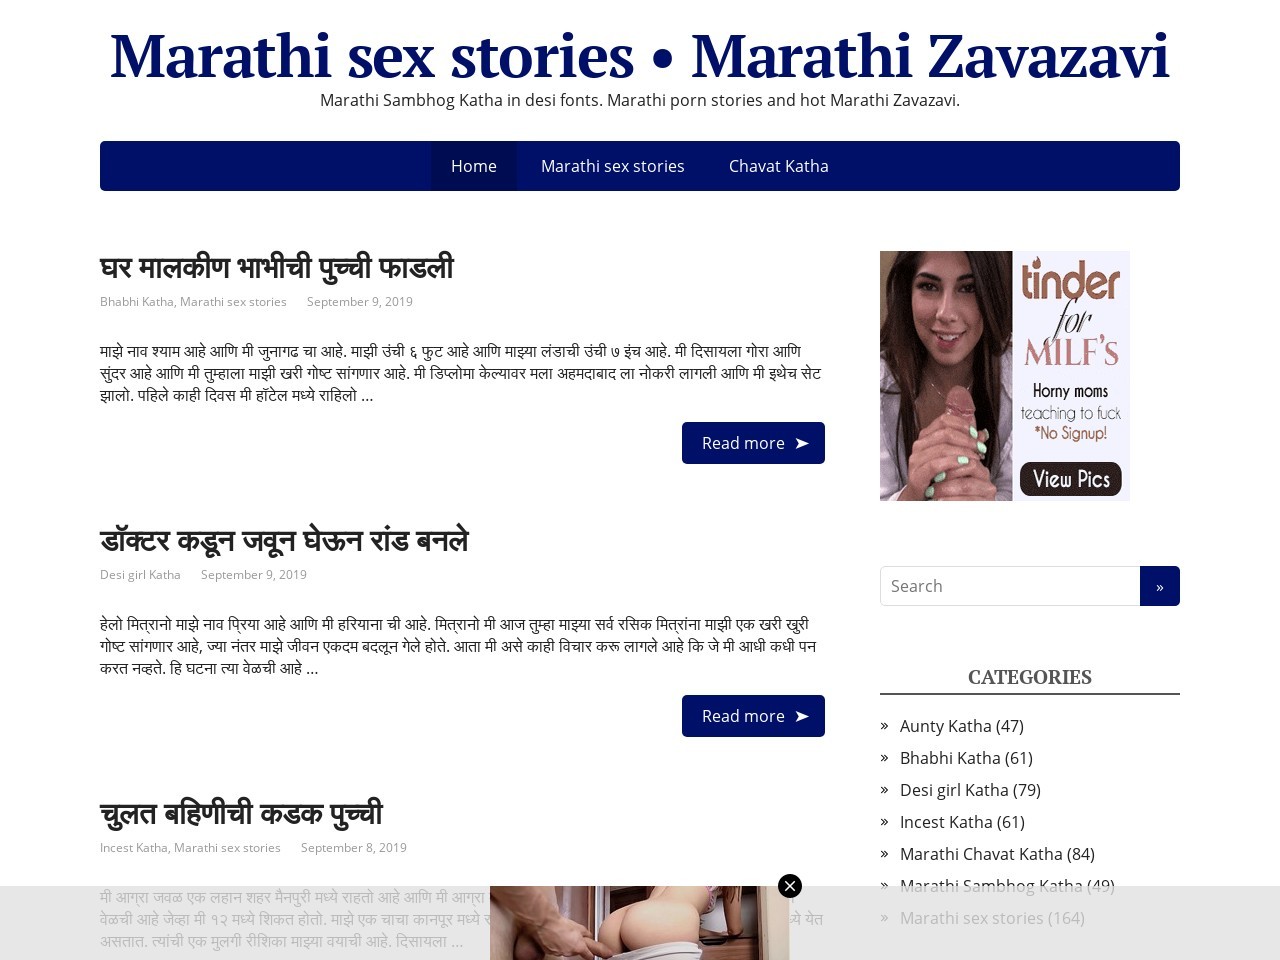 Www Marathi Zavazavi Com - Marathi Zavazavi & 20+ Indian Sex Stories Sites Like marathisexkatha.com